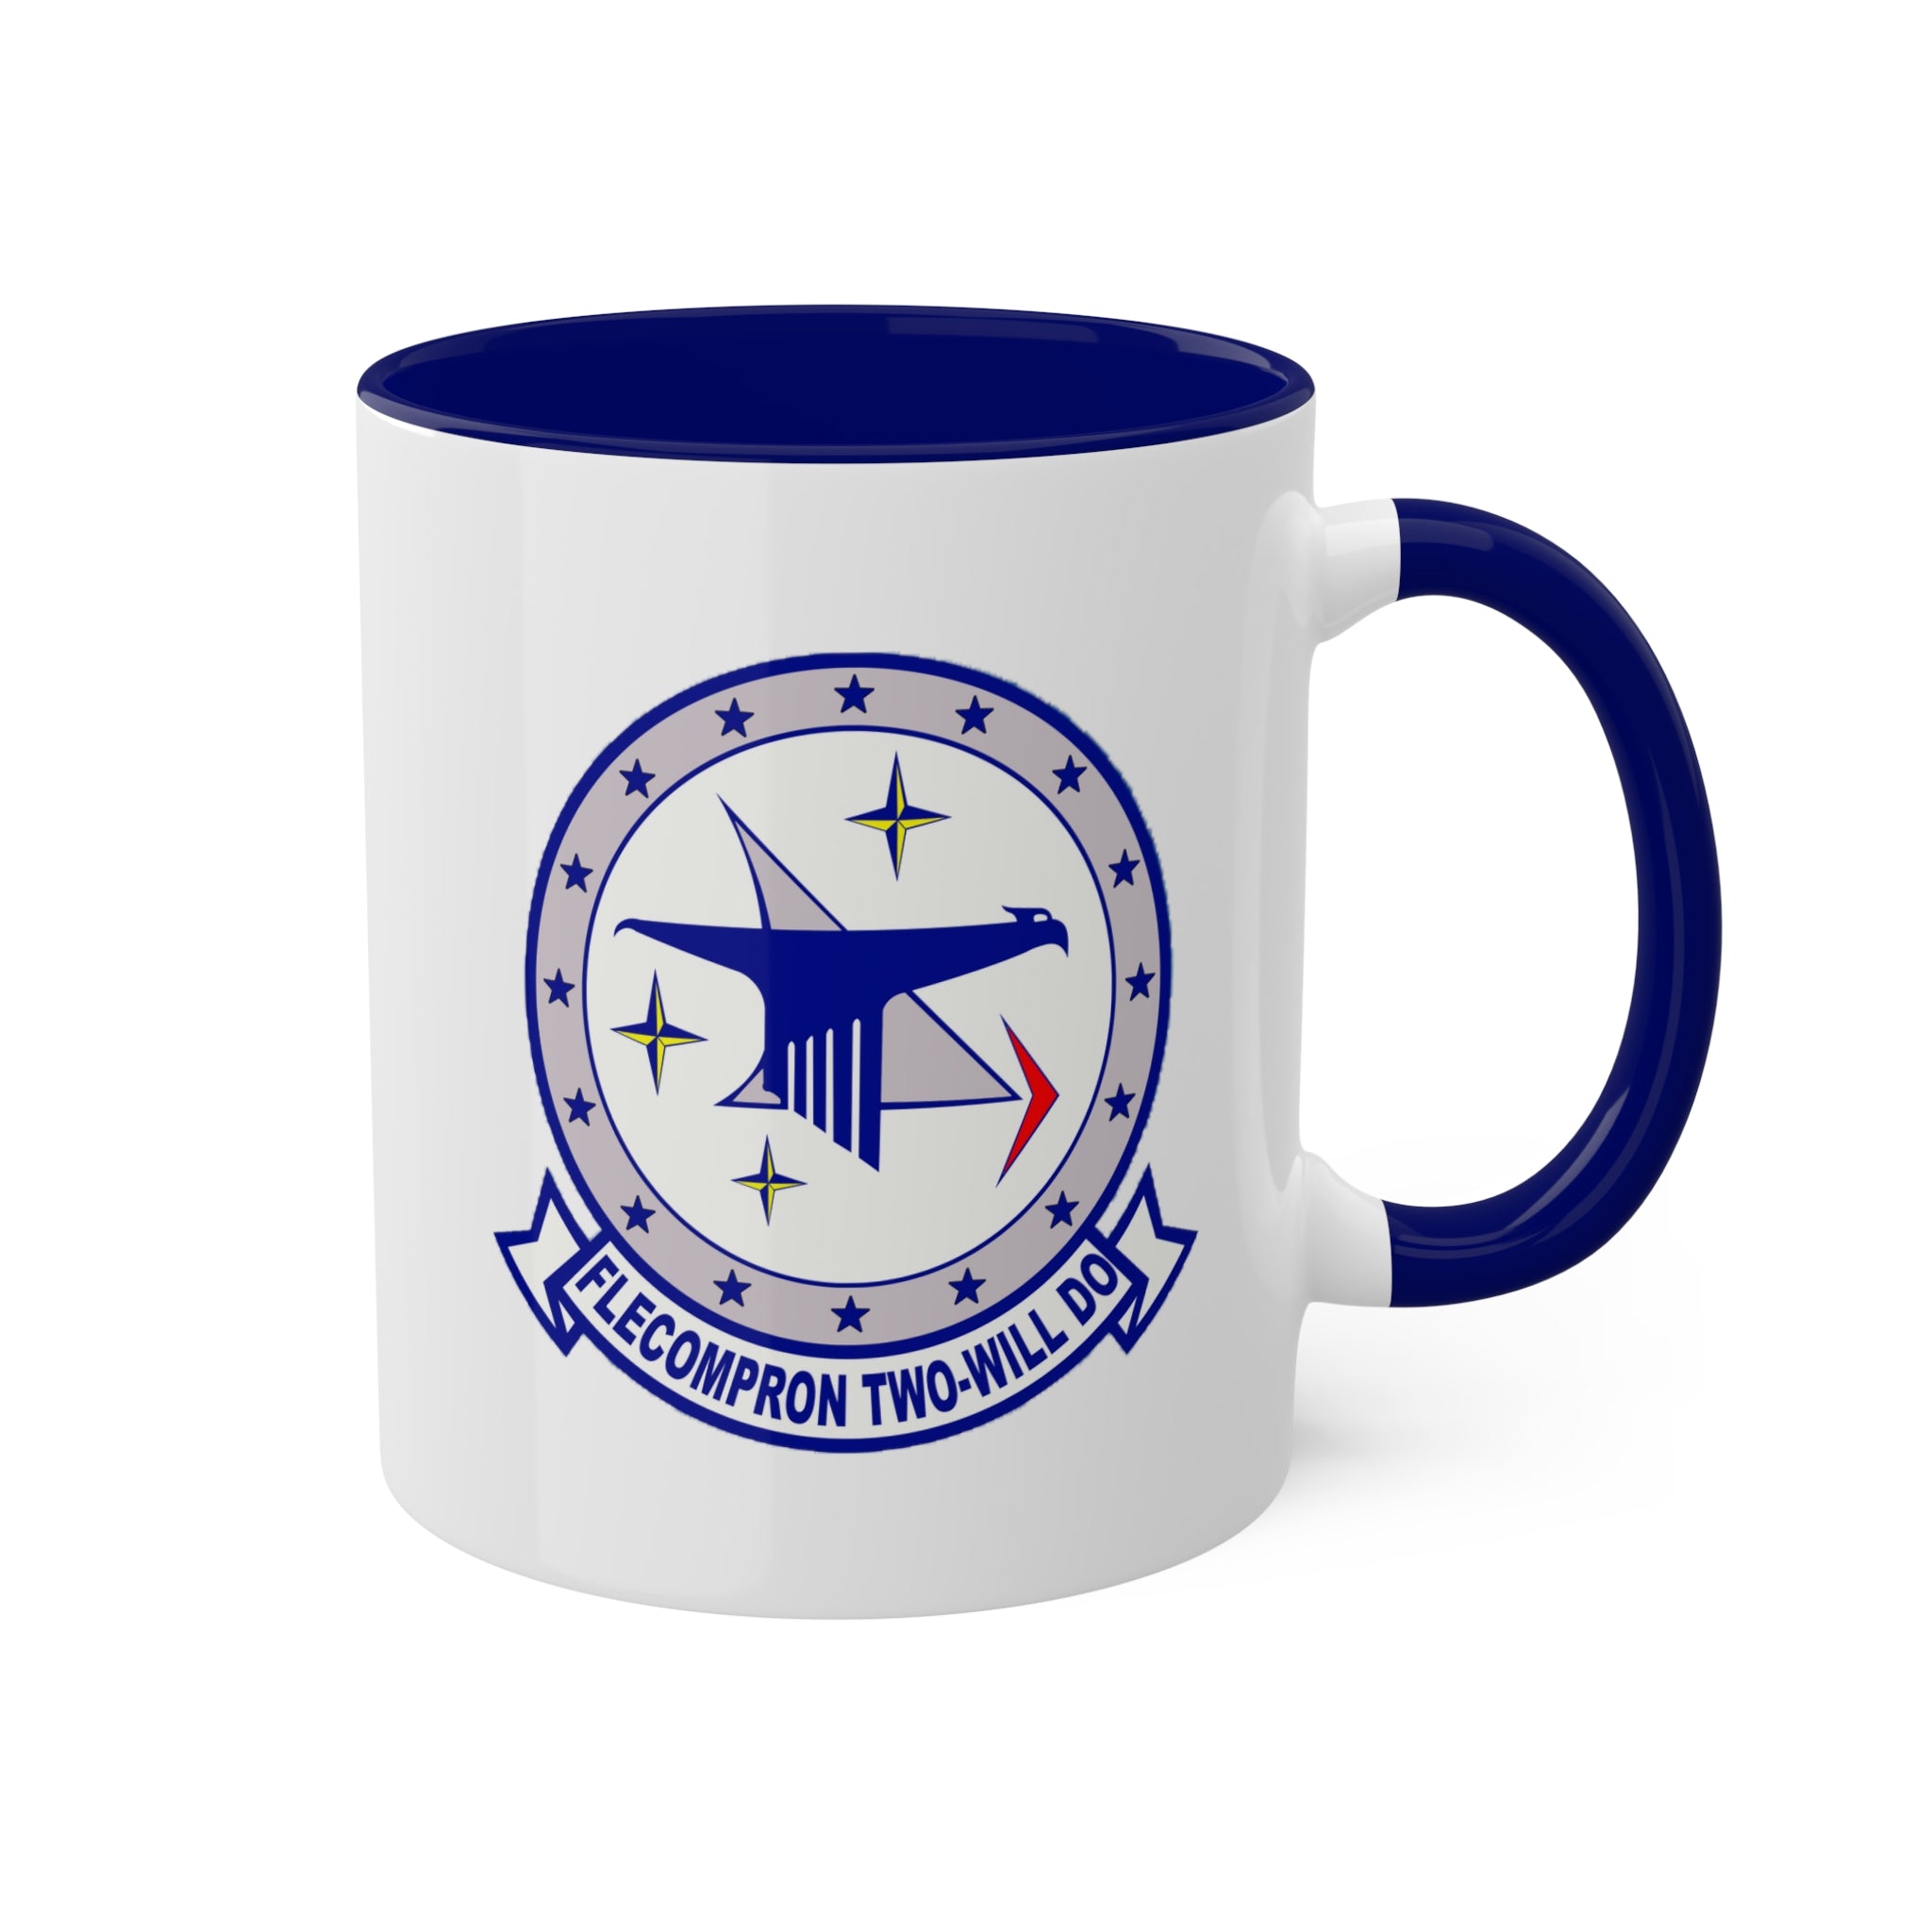 VC-2 "Blue Falcons" Naval Flight Officer 10oz. Mug, Navy Composite Squadron